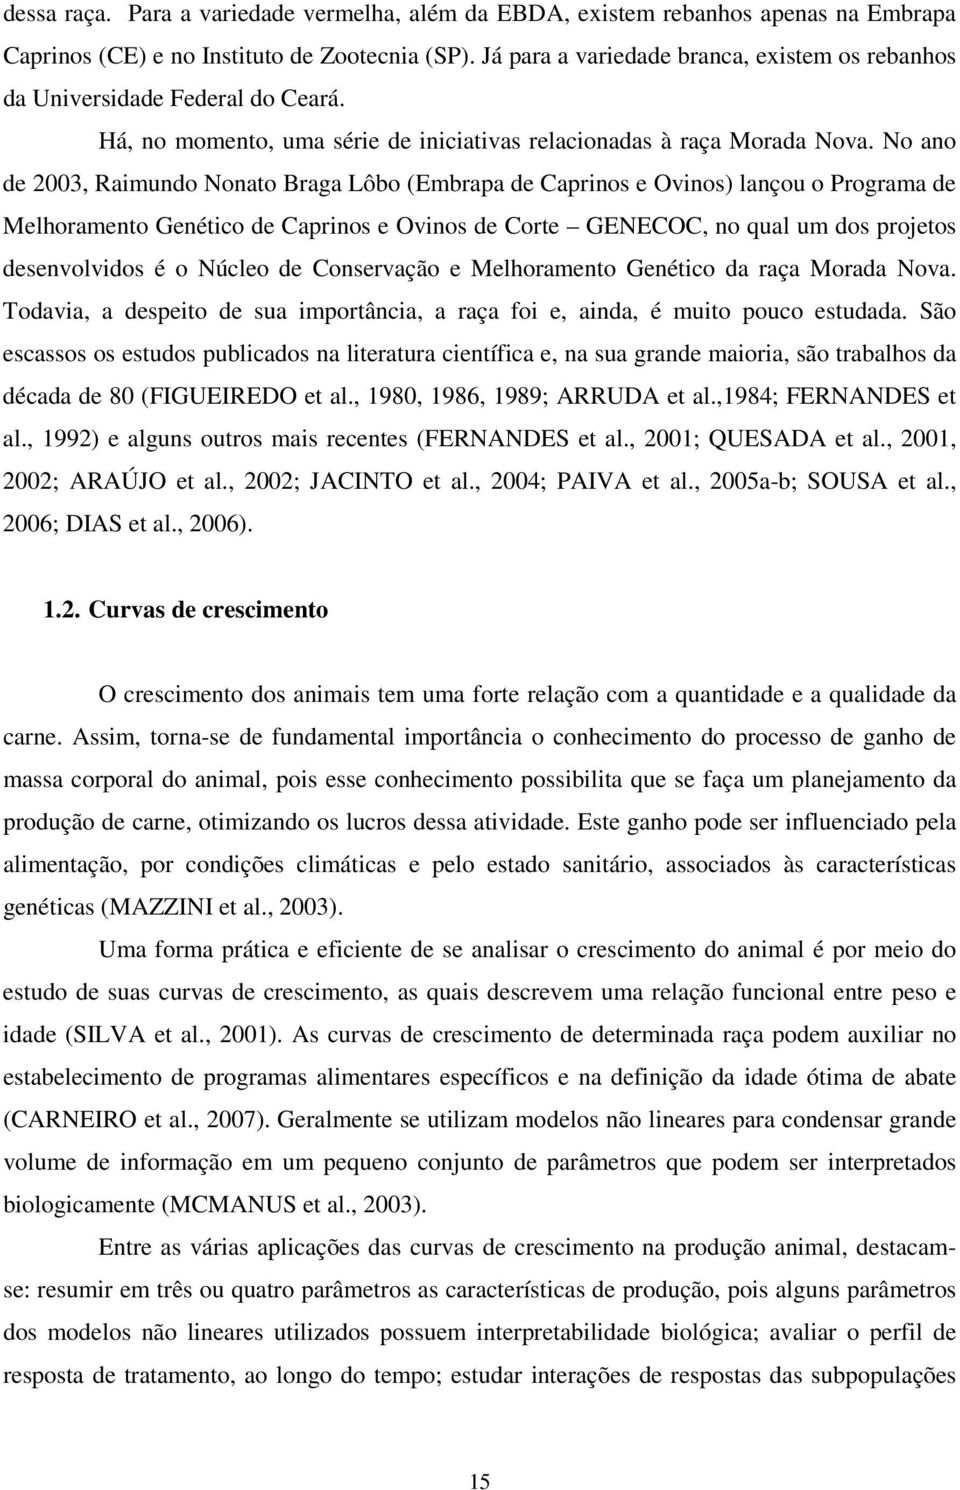 No ano de 2003, Raimundo Nonato Braga Lôbo (Embrapa de Caprinos e Ovinos) lançou o Programa de Melhoramento Genético de Caprinos e Ovinos de Corte GENECOC, no qual um dos projetos desenvolvidos é o